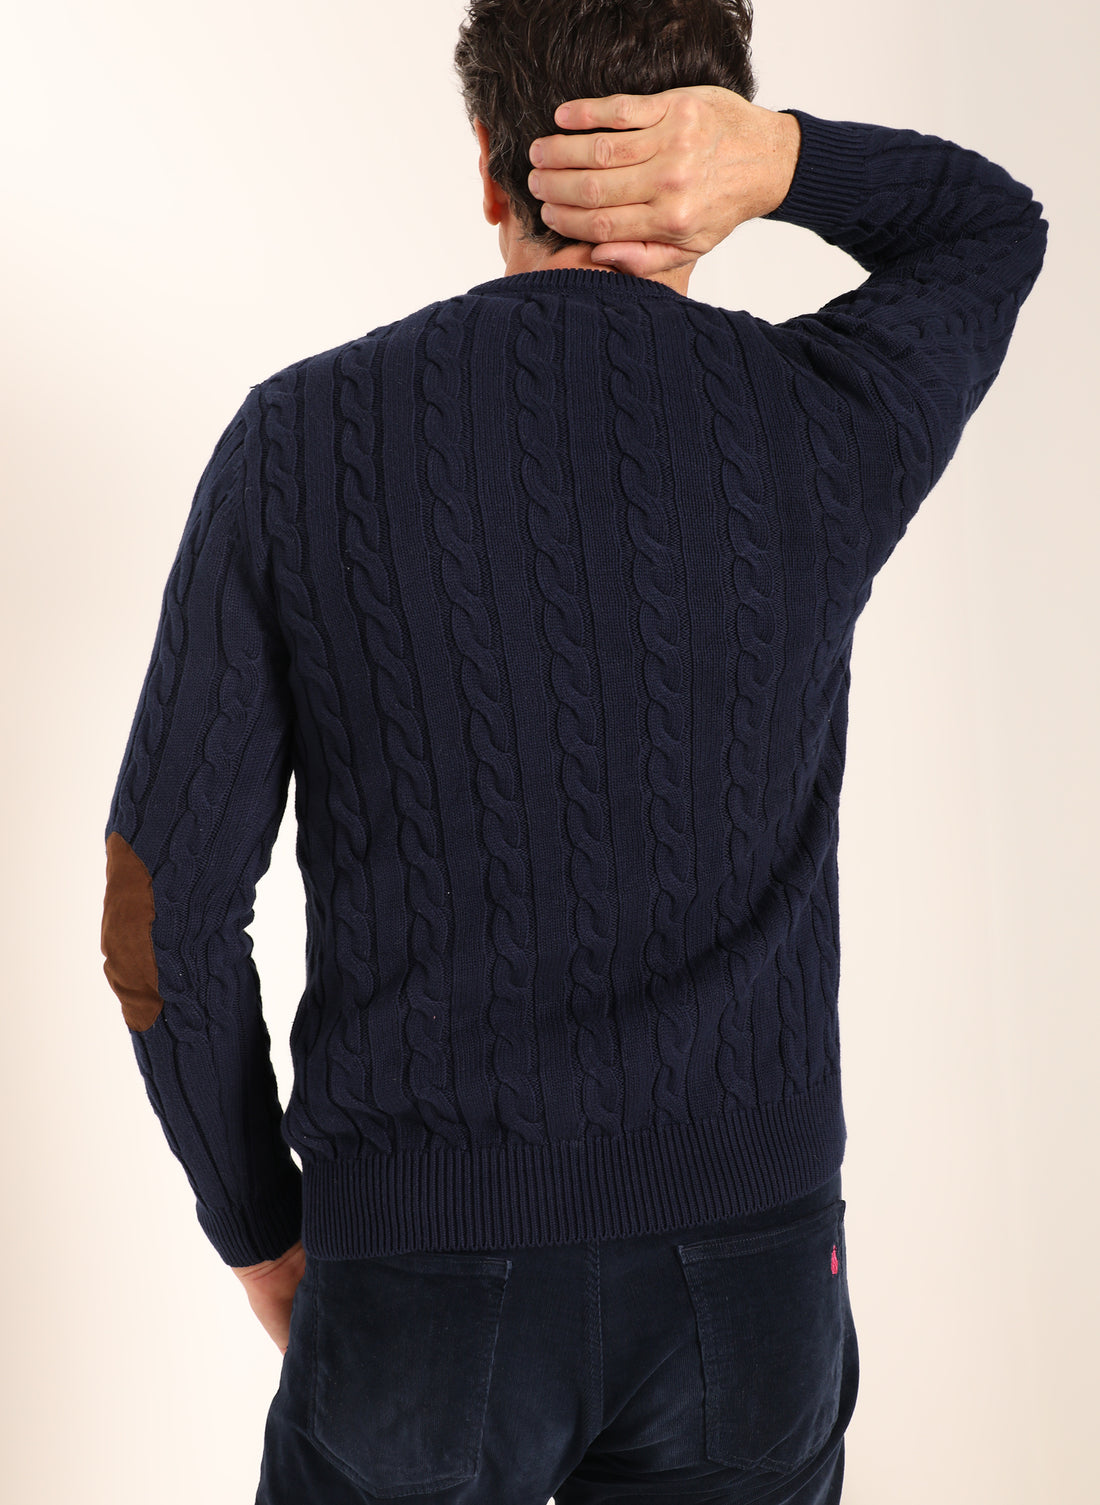 Blauer Eights-Pullover für Herren, braune Ellbogenschützer